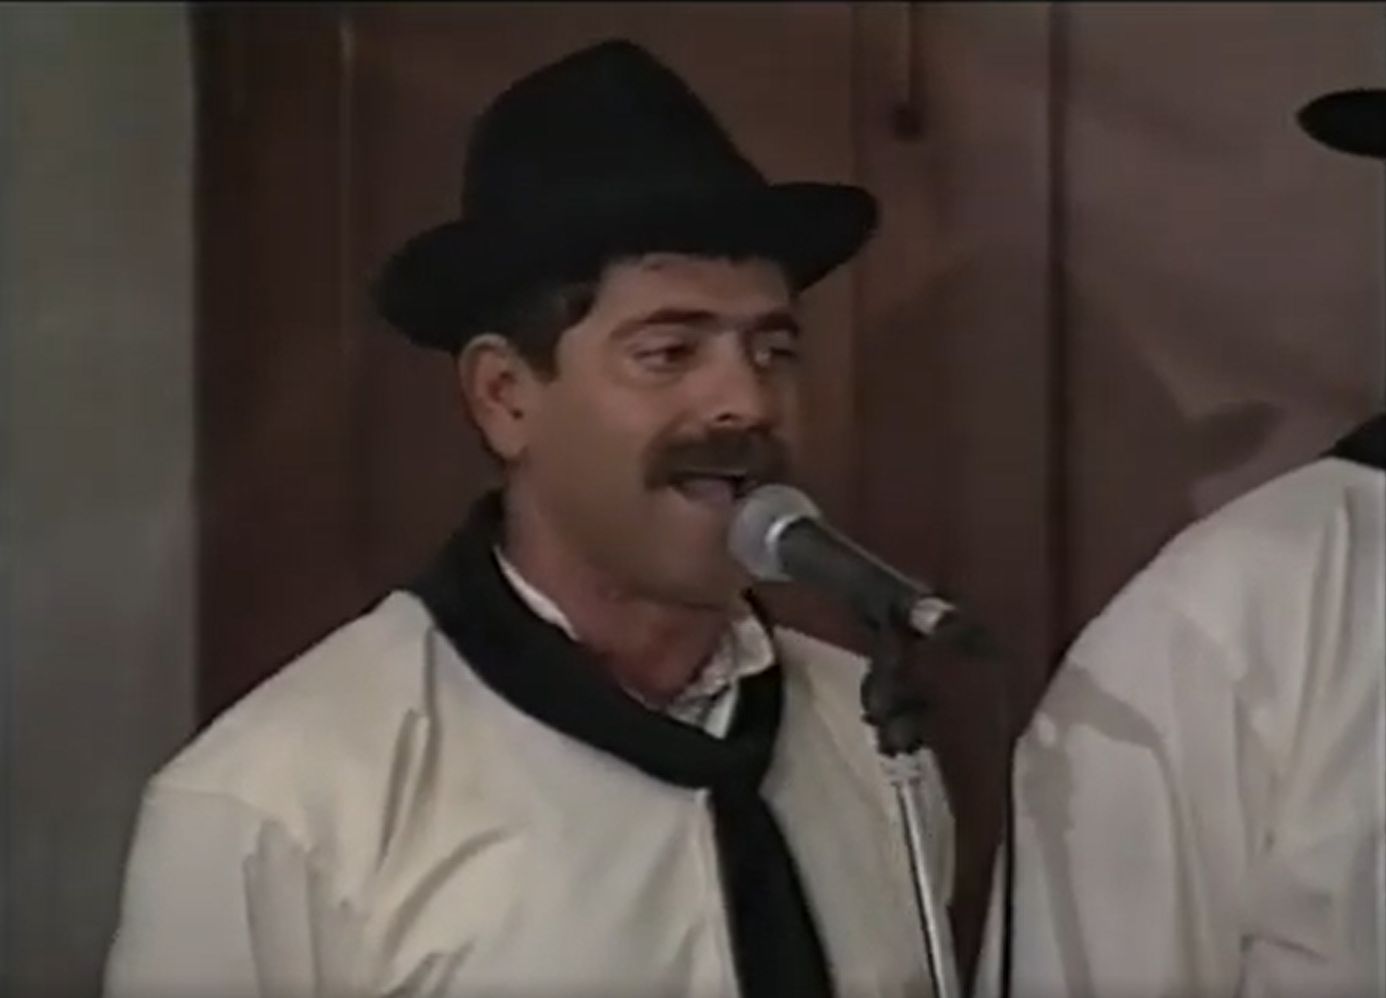 Agrupación folklórica Guadarfía (1995)